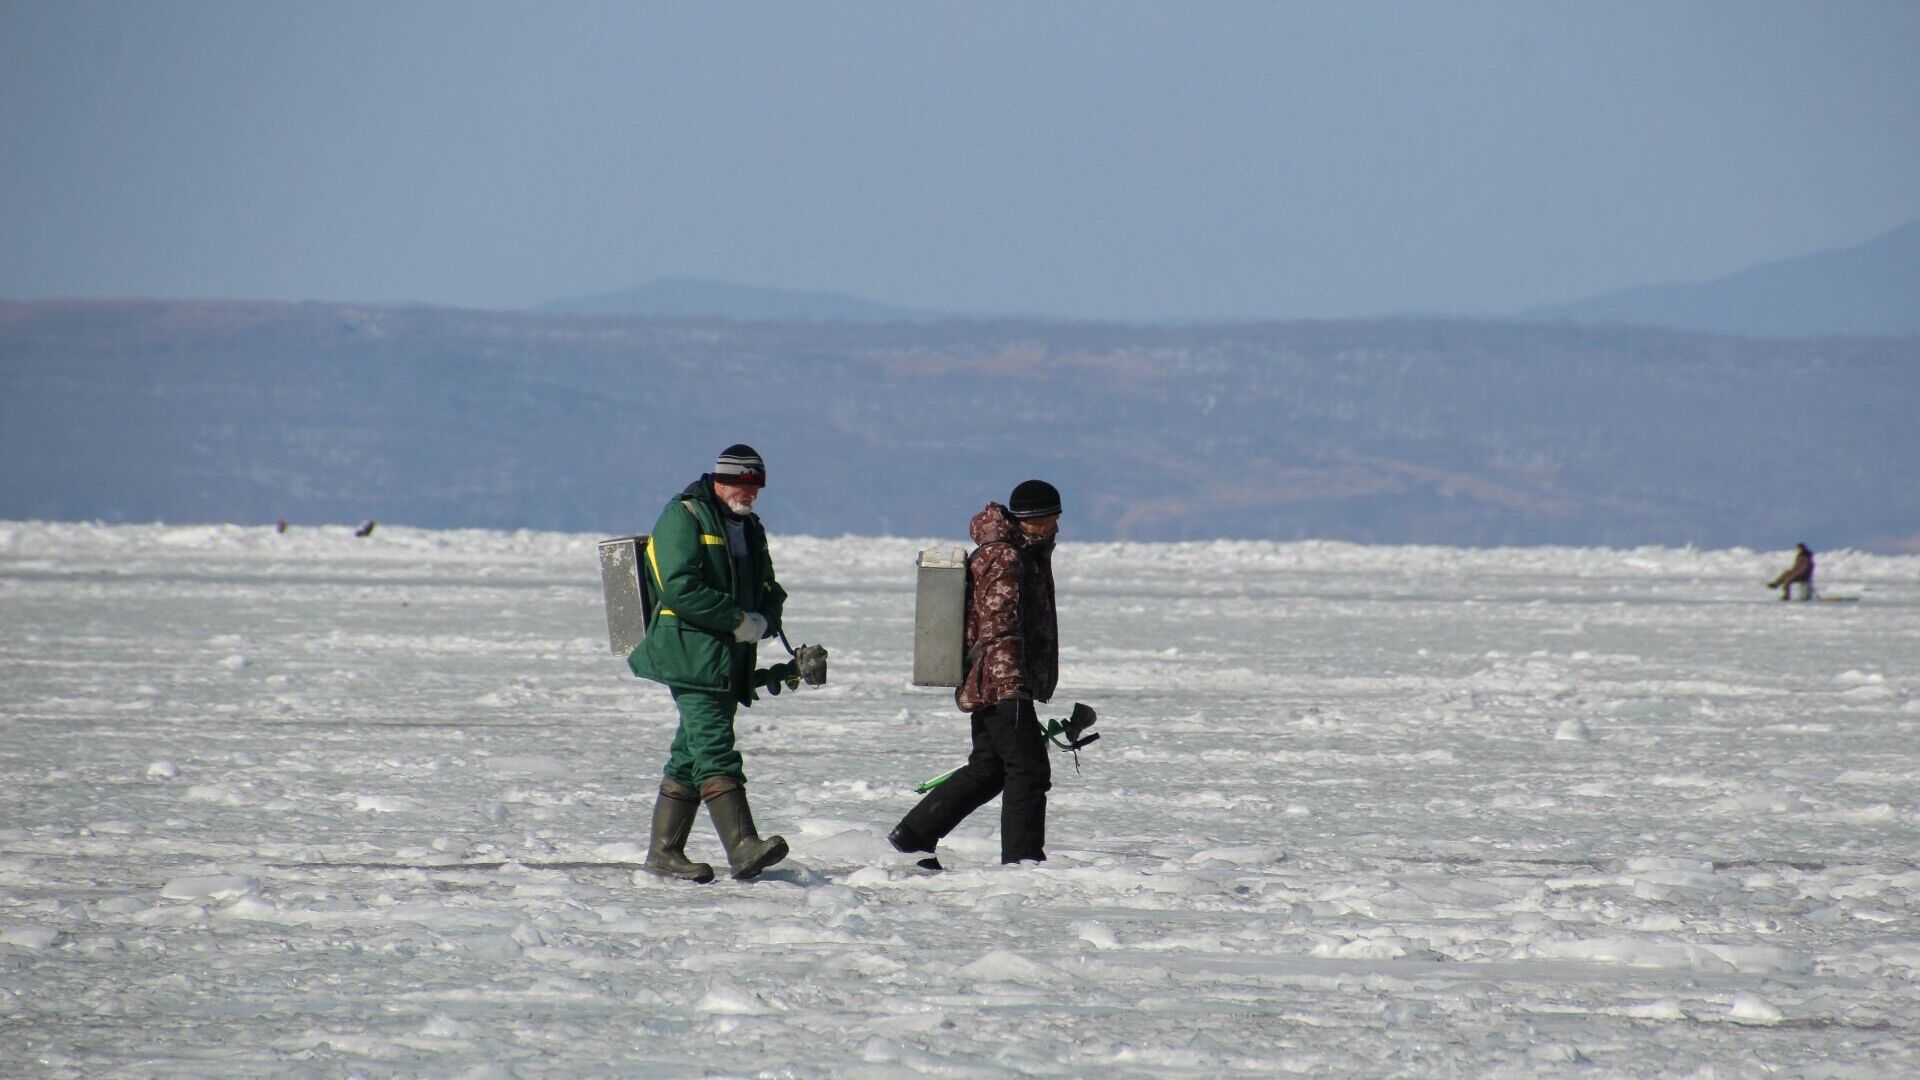 11 протоколов за выход на лед в запрещенных местах составили на нижегородцев